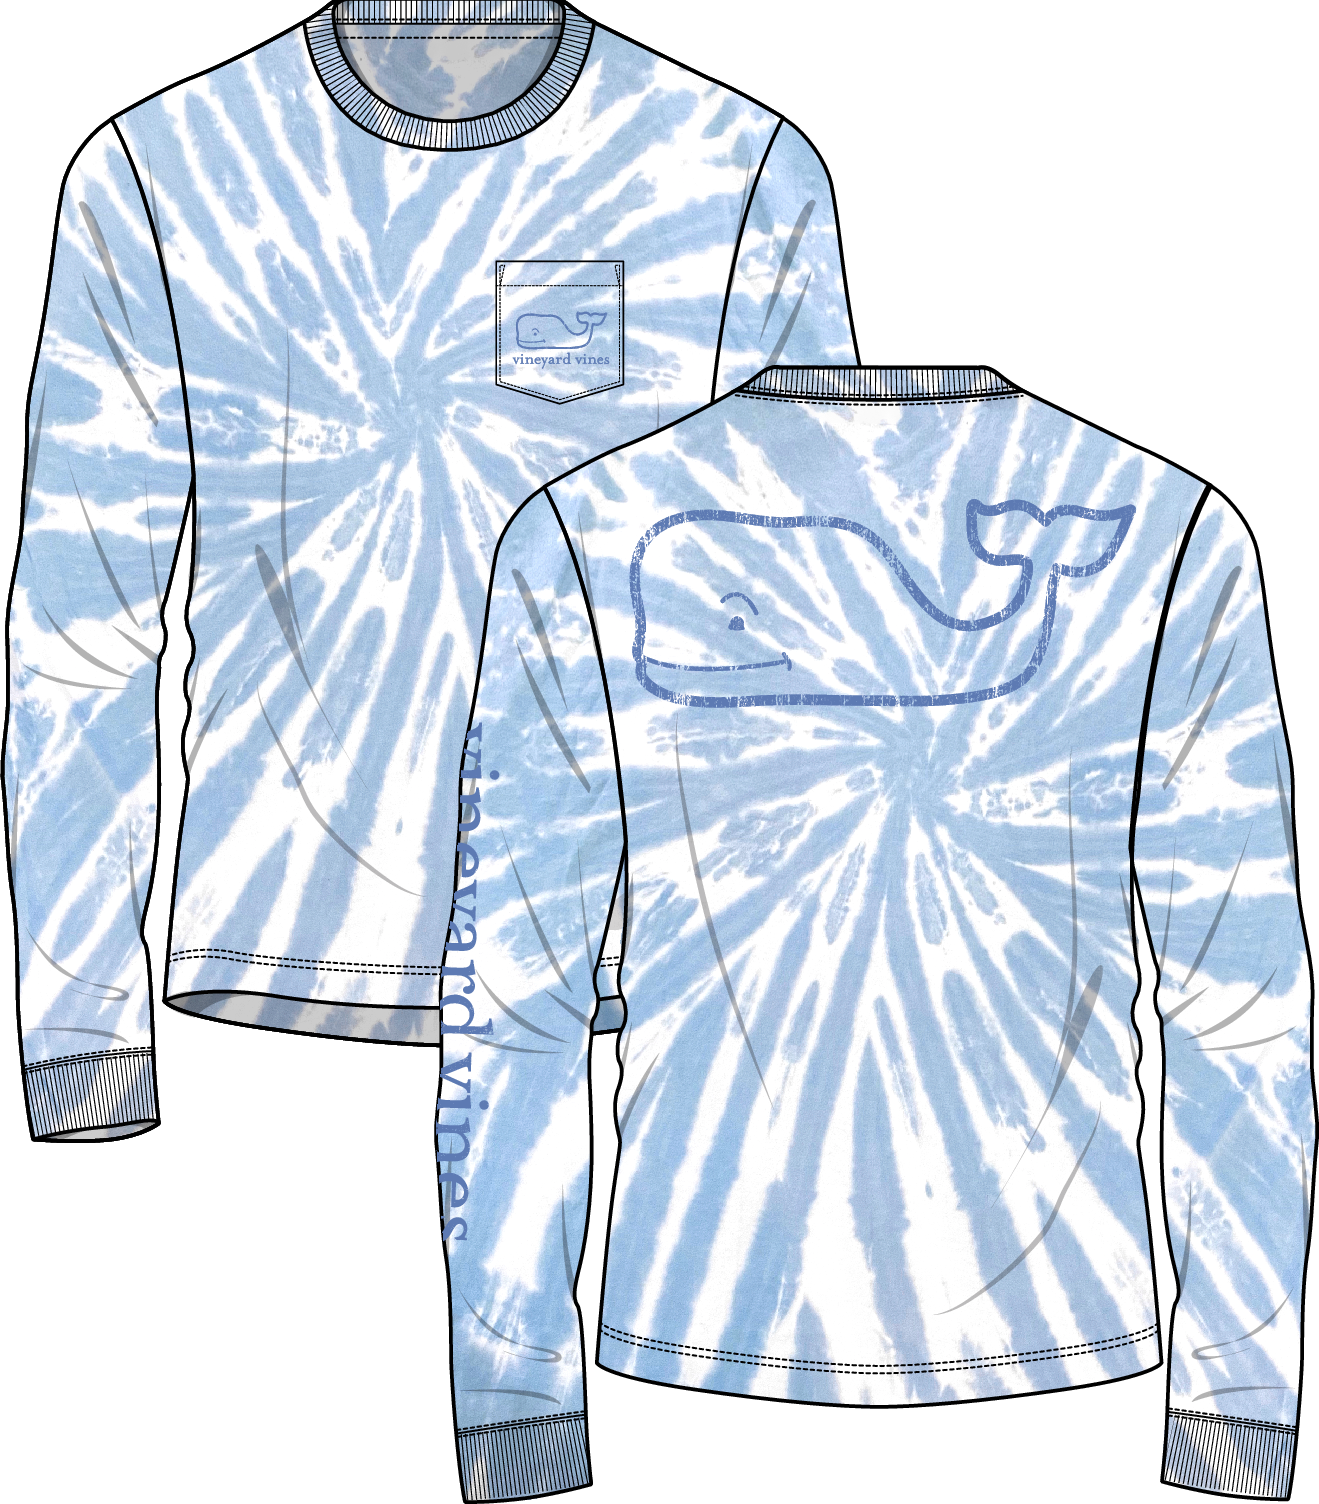 Vineyard Vines Men's Short-Sleeve On-The-Go T-Shirt, Blue Blazer